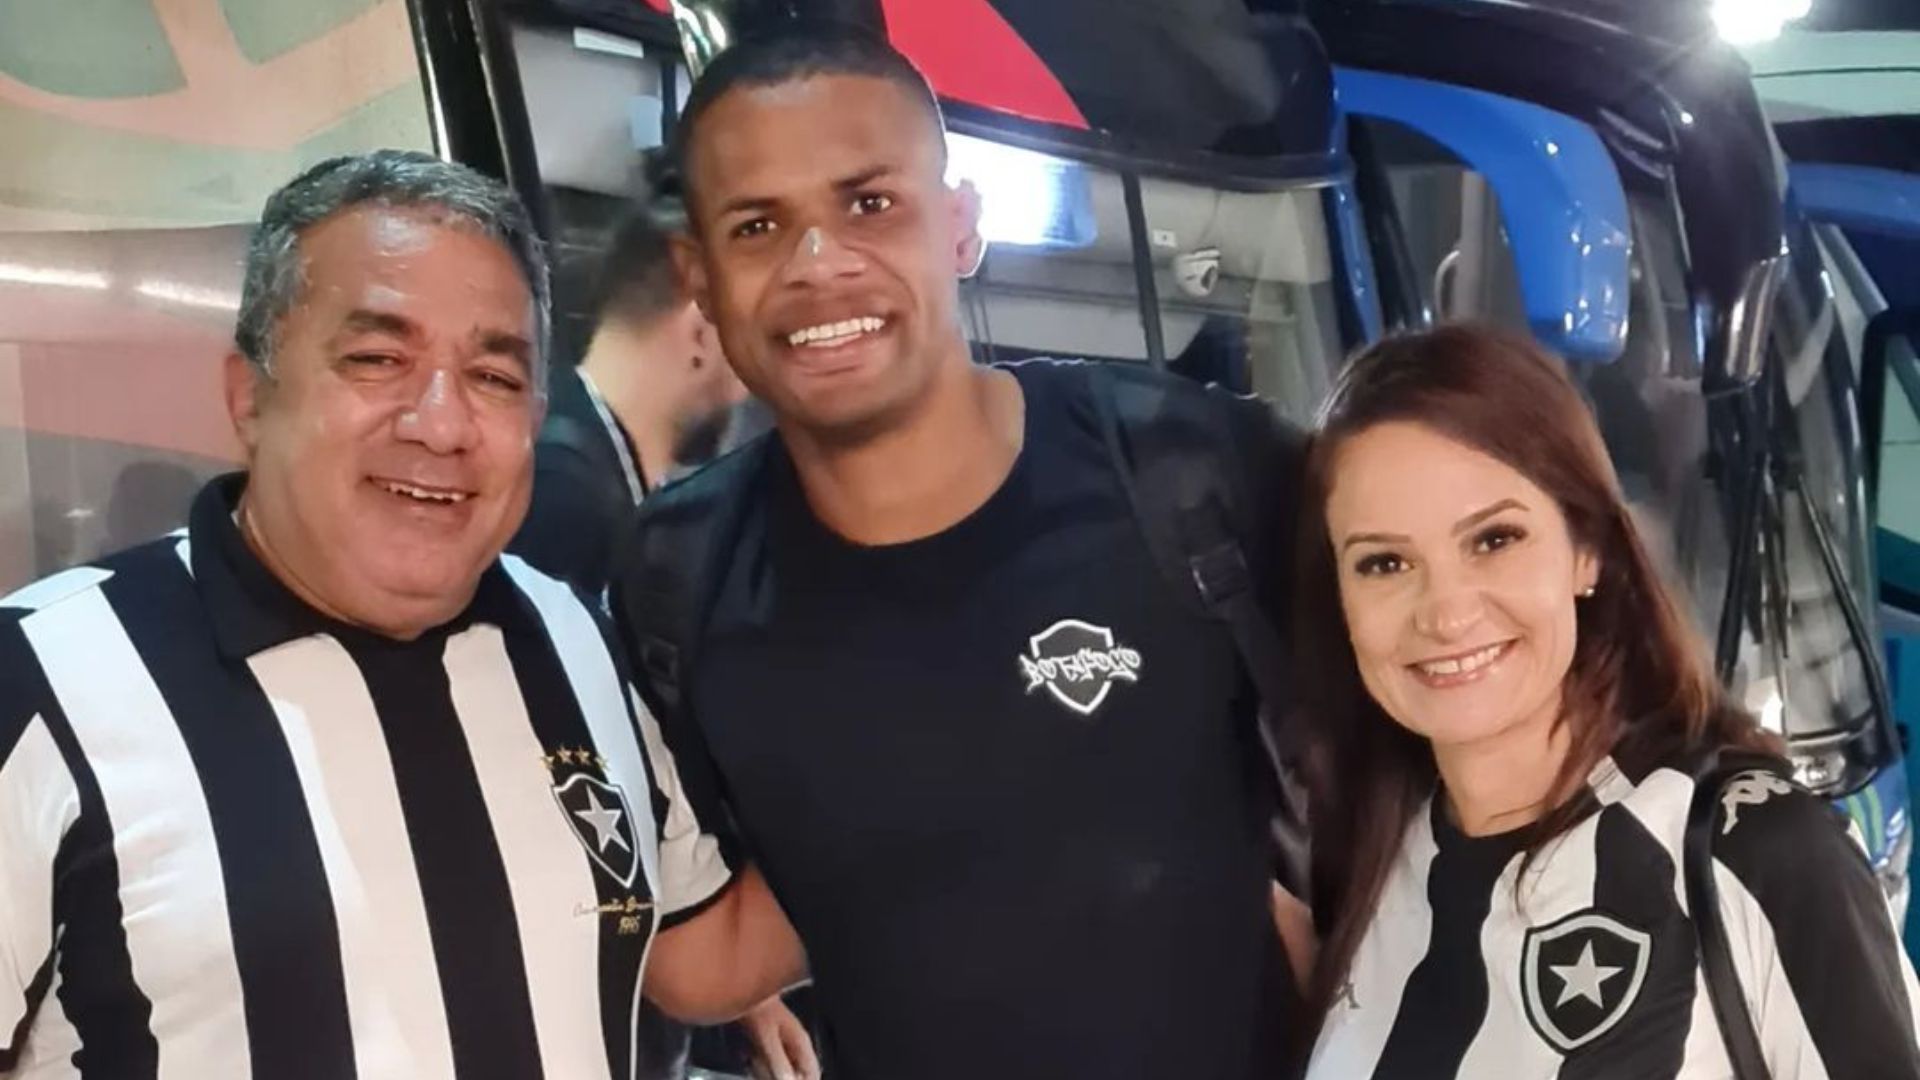 Gerogia Ayres usou a blusa dedicada a Mauro Machado durante uma partida do Flamengo contra o Botafogo, no último domingo (30)